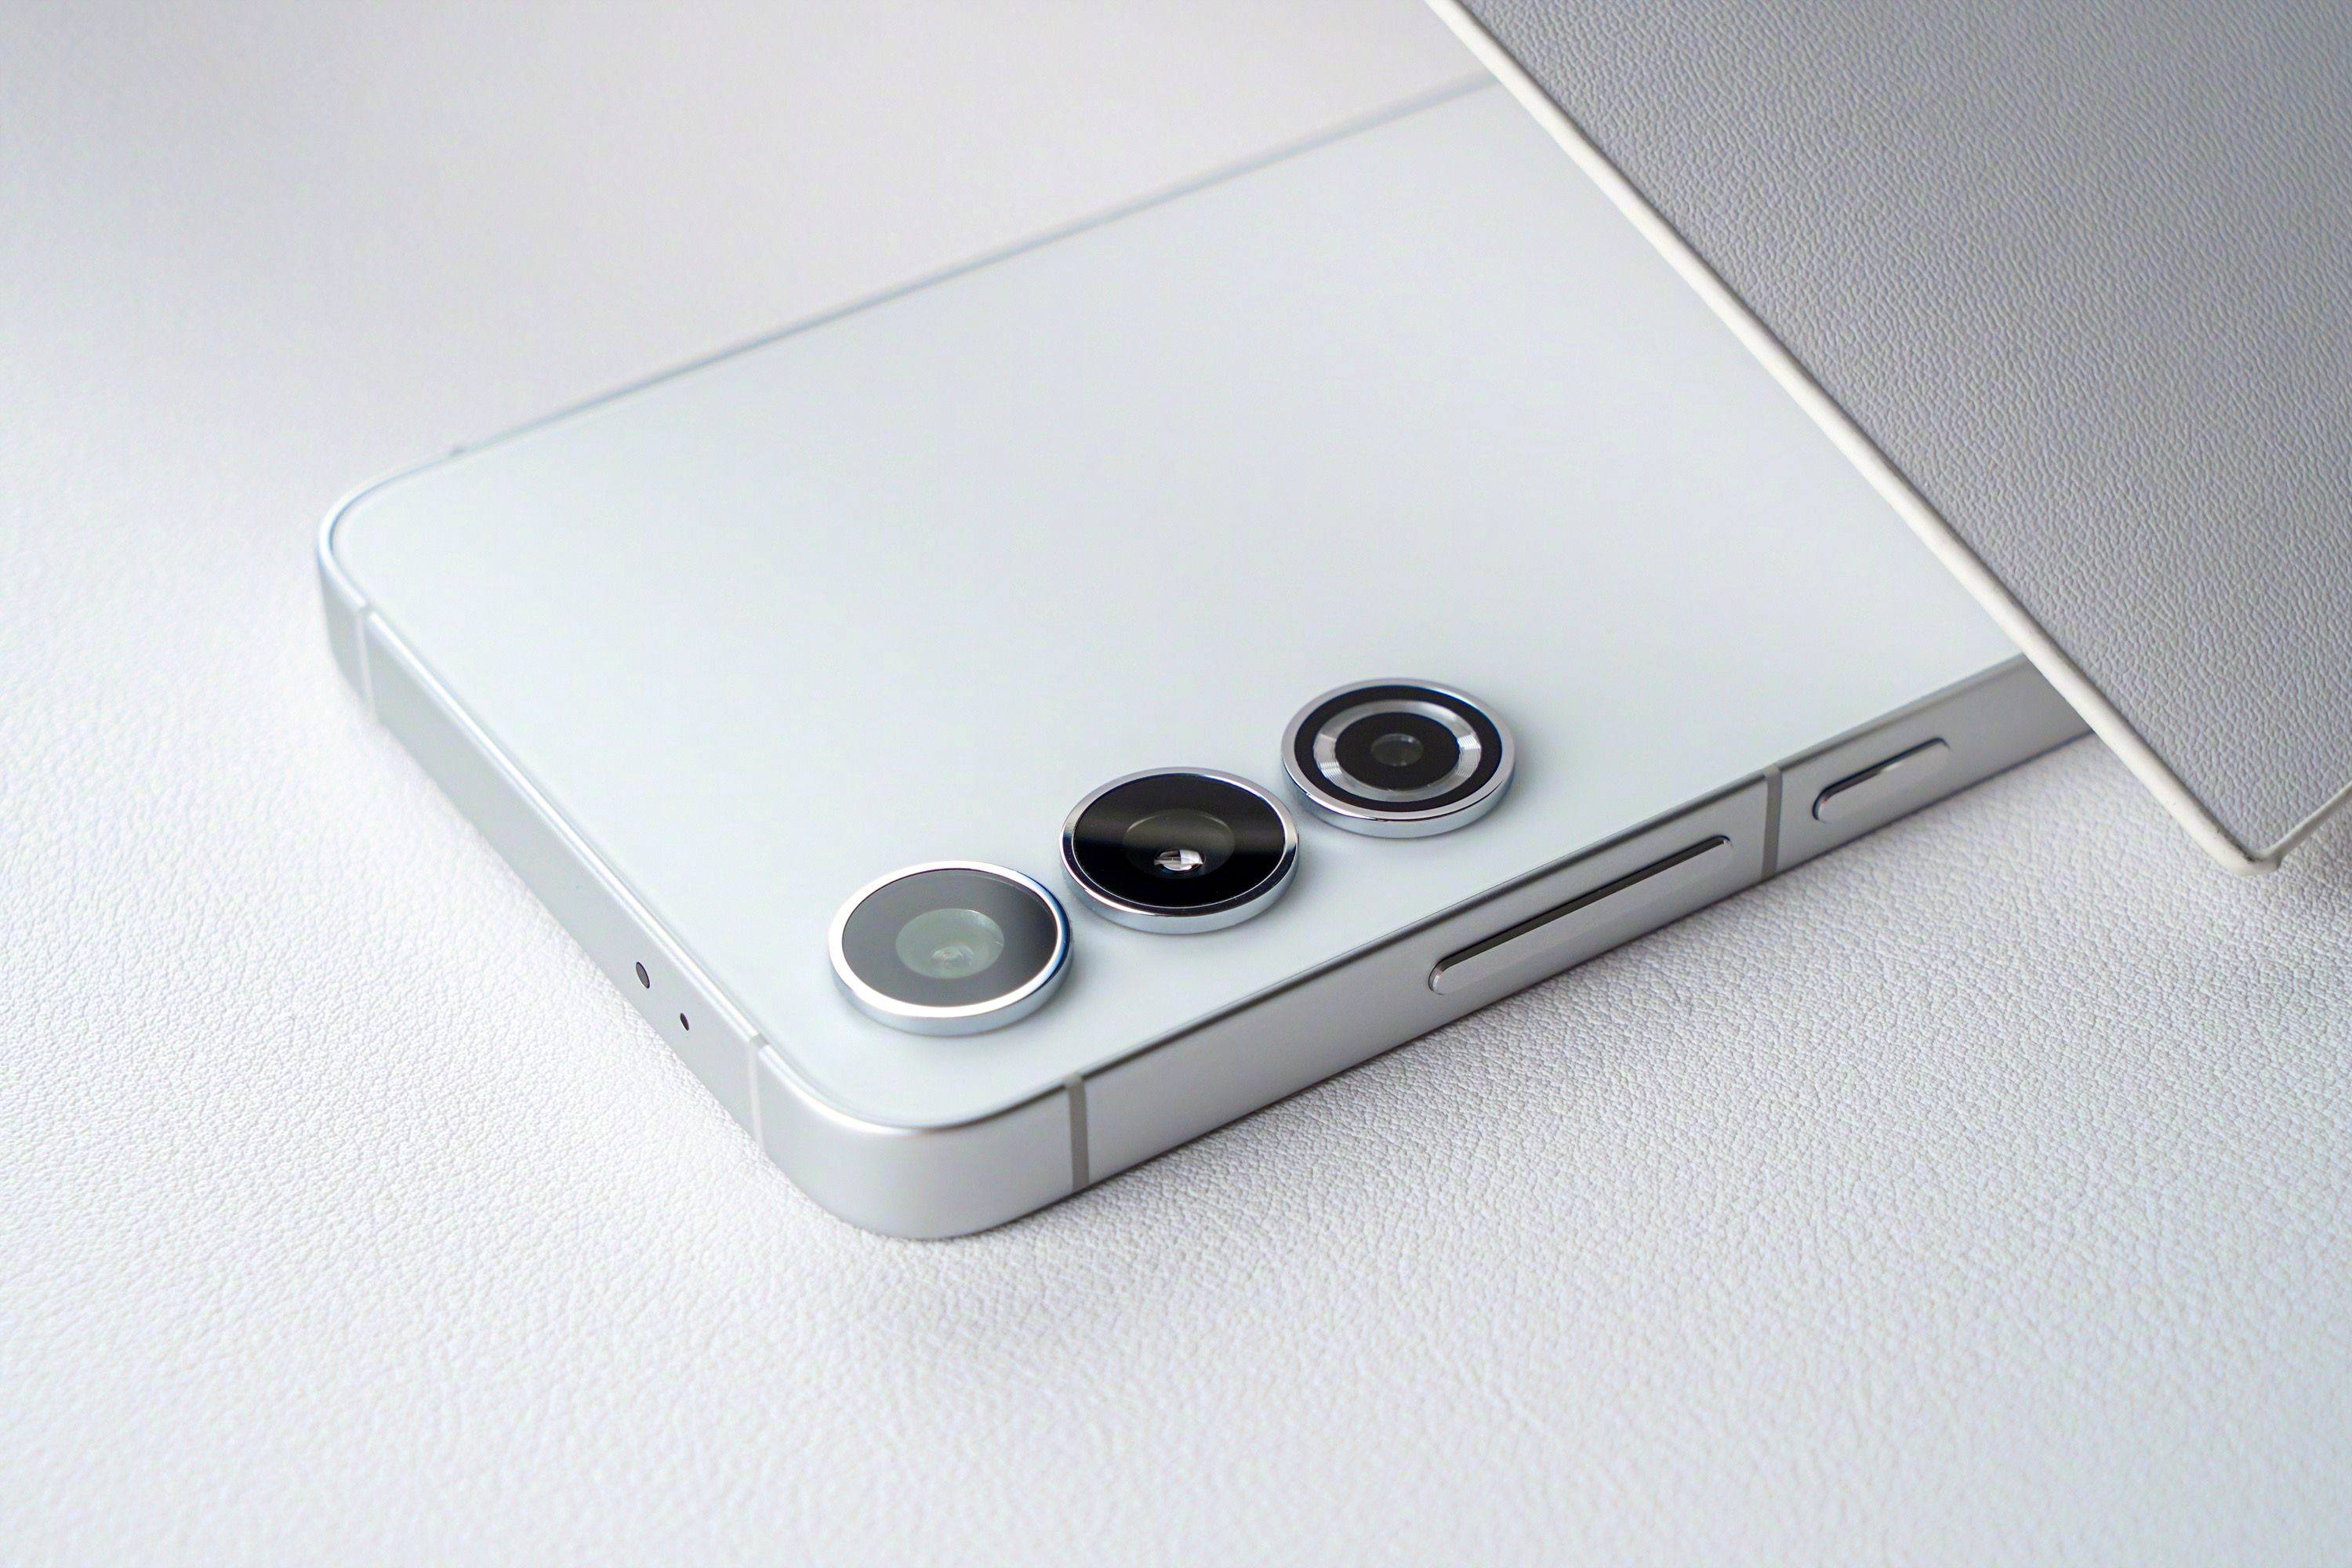 In stile iPhone: i Samsung Galaxy S24 e S24+ avranno un design aggiornato con cornici laterali piatte